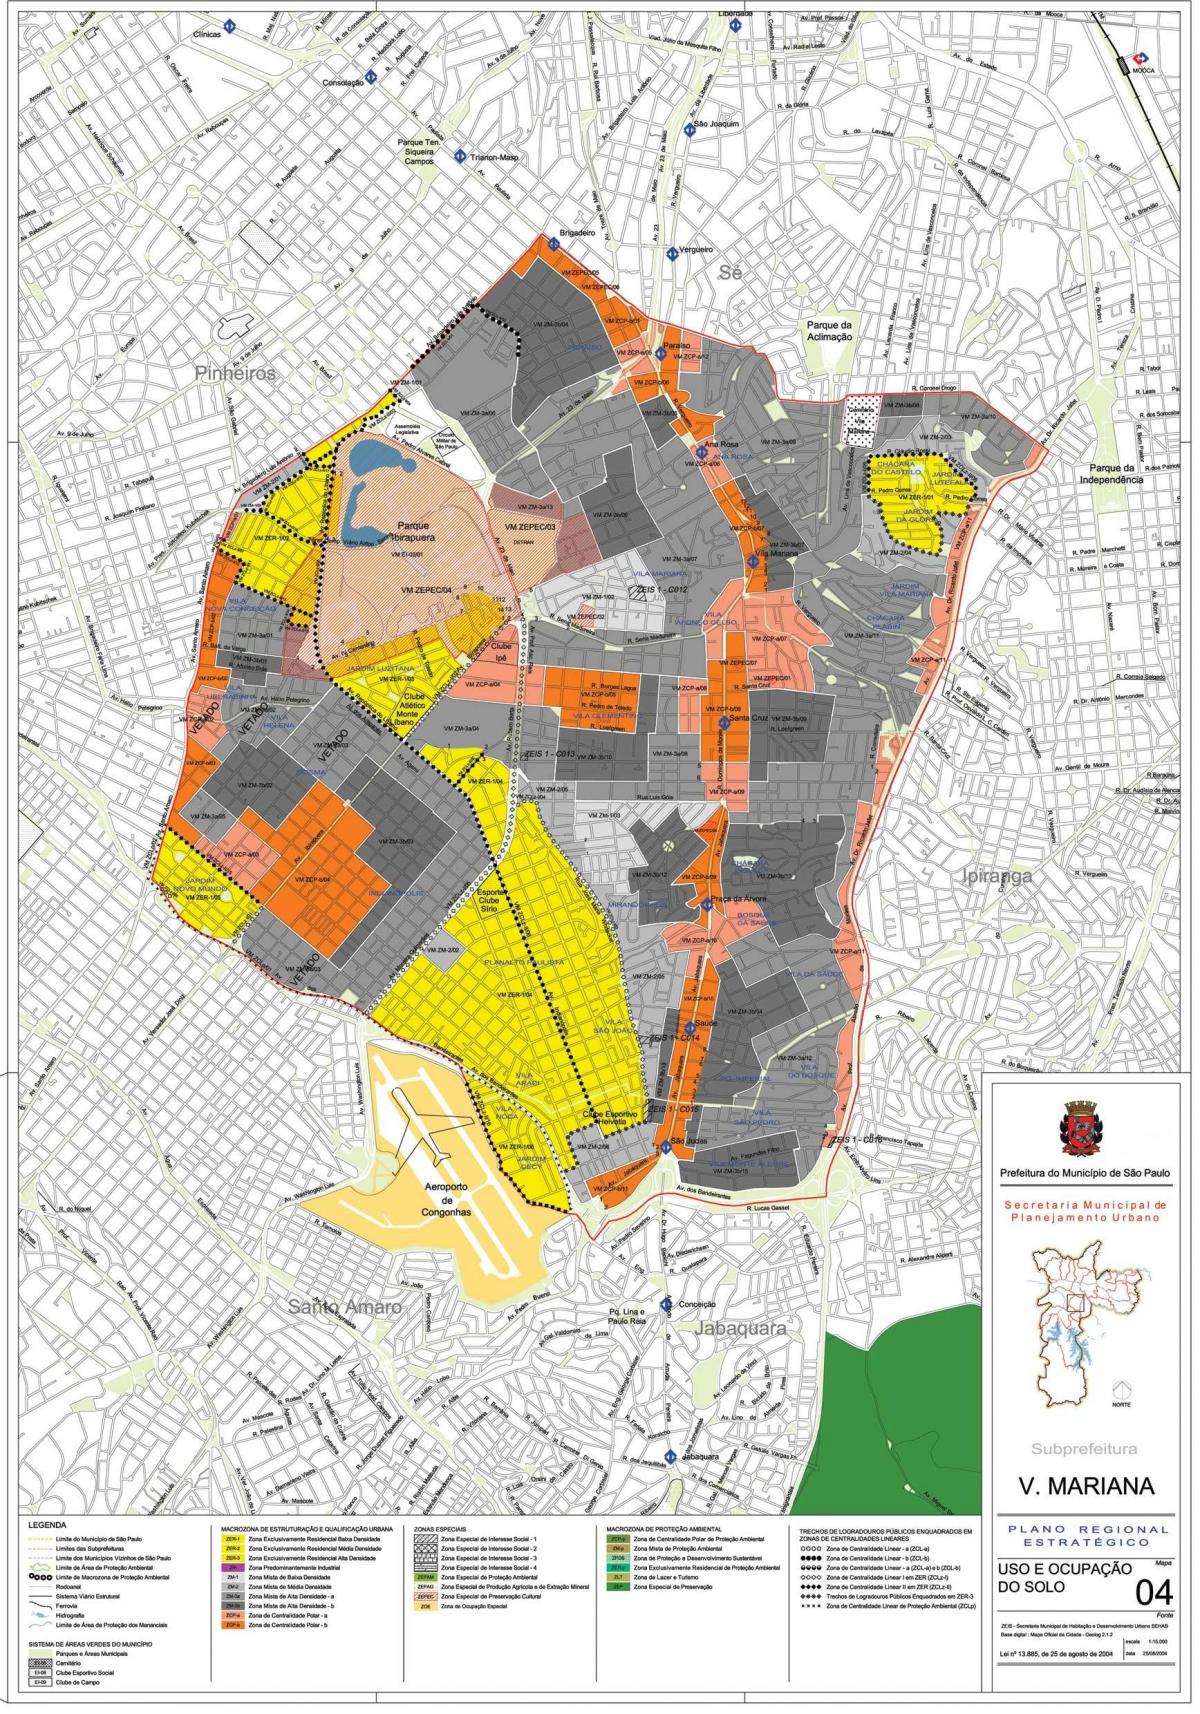 Kaart van Vila Mariana São Paulo - Besetting van die grond